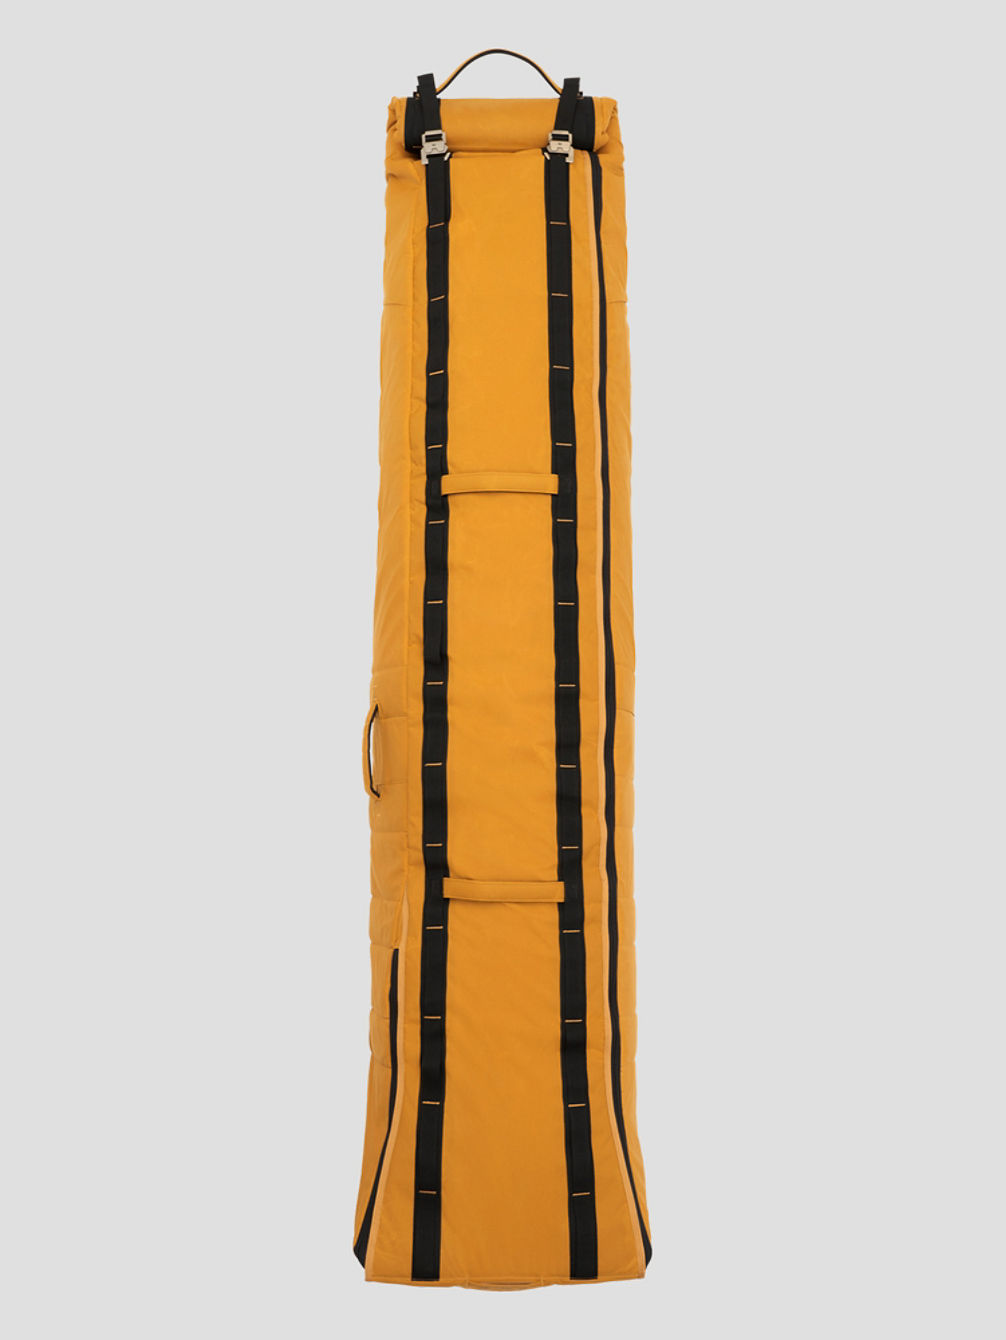 The Djarv Sage Kotsenburg 150L Boardbag